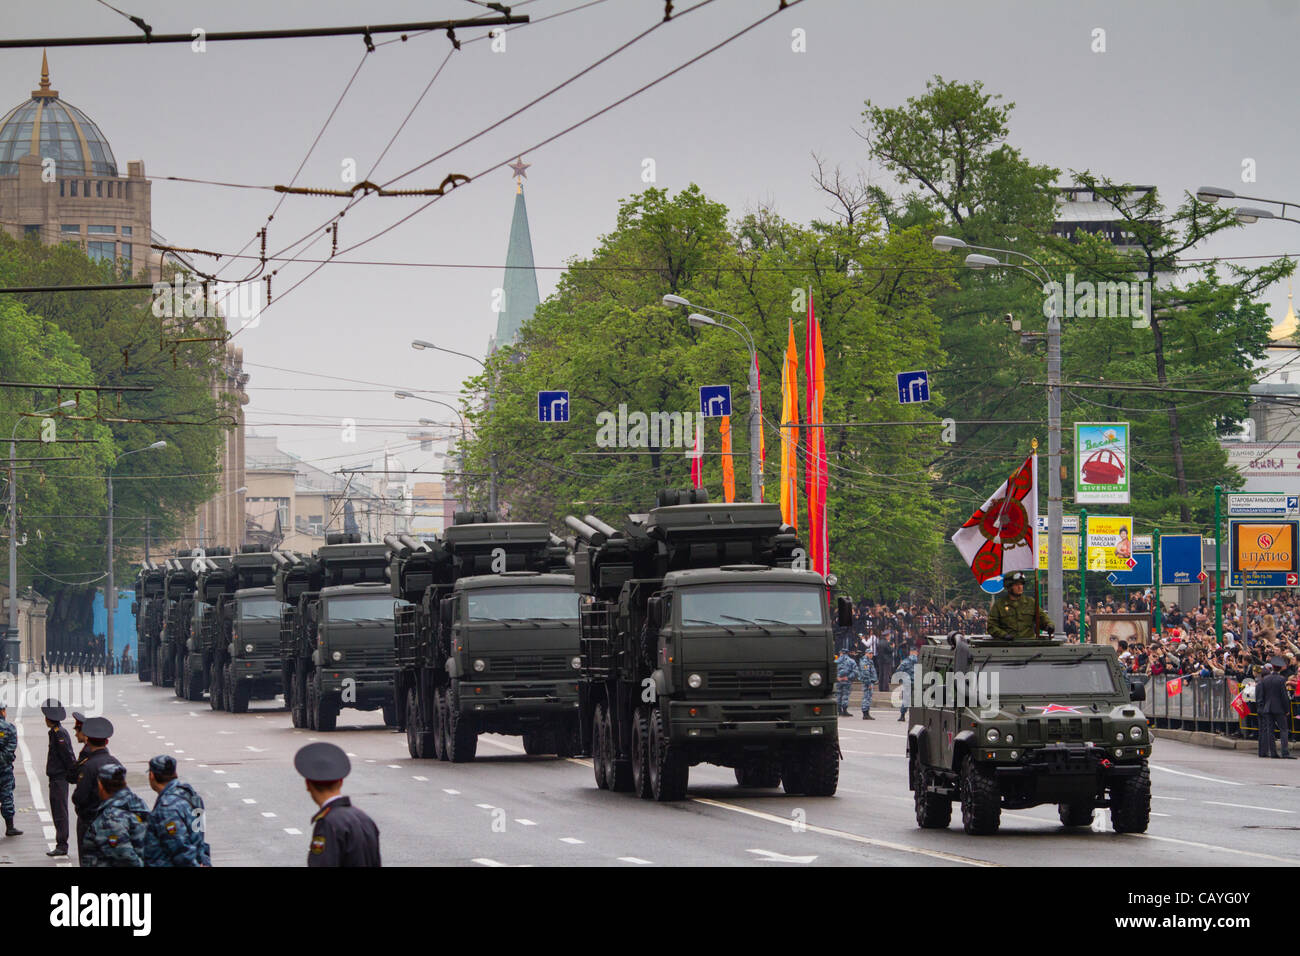 Militärische Fahrzeuge voran neue Arbat-Straße nach dem Verlassen des Roten Platzes während einer Militärparade zu Ehren des 67. Jahrestages des großen Sieges im großen Vaterländischen Krieg 1941-1945. Mittwoch, 9. Mai 2012 in Moskau, Russland. Stockfoto